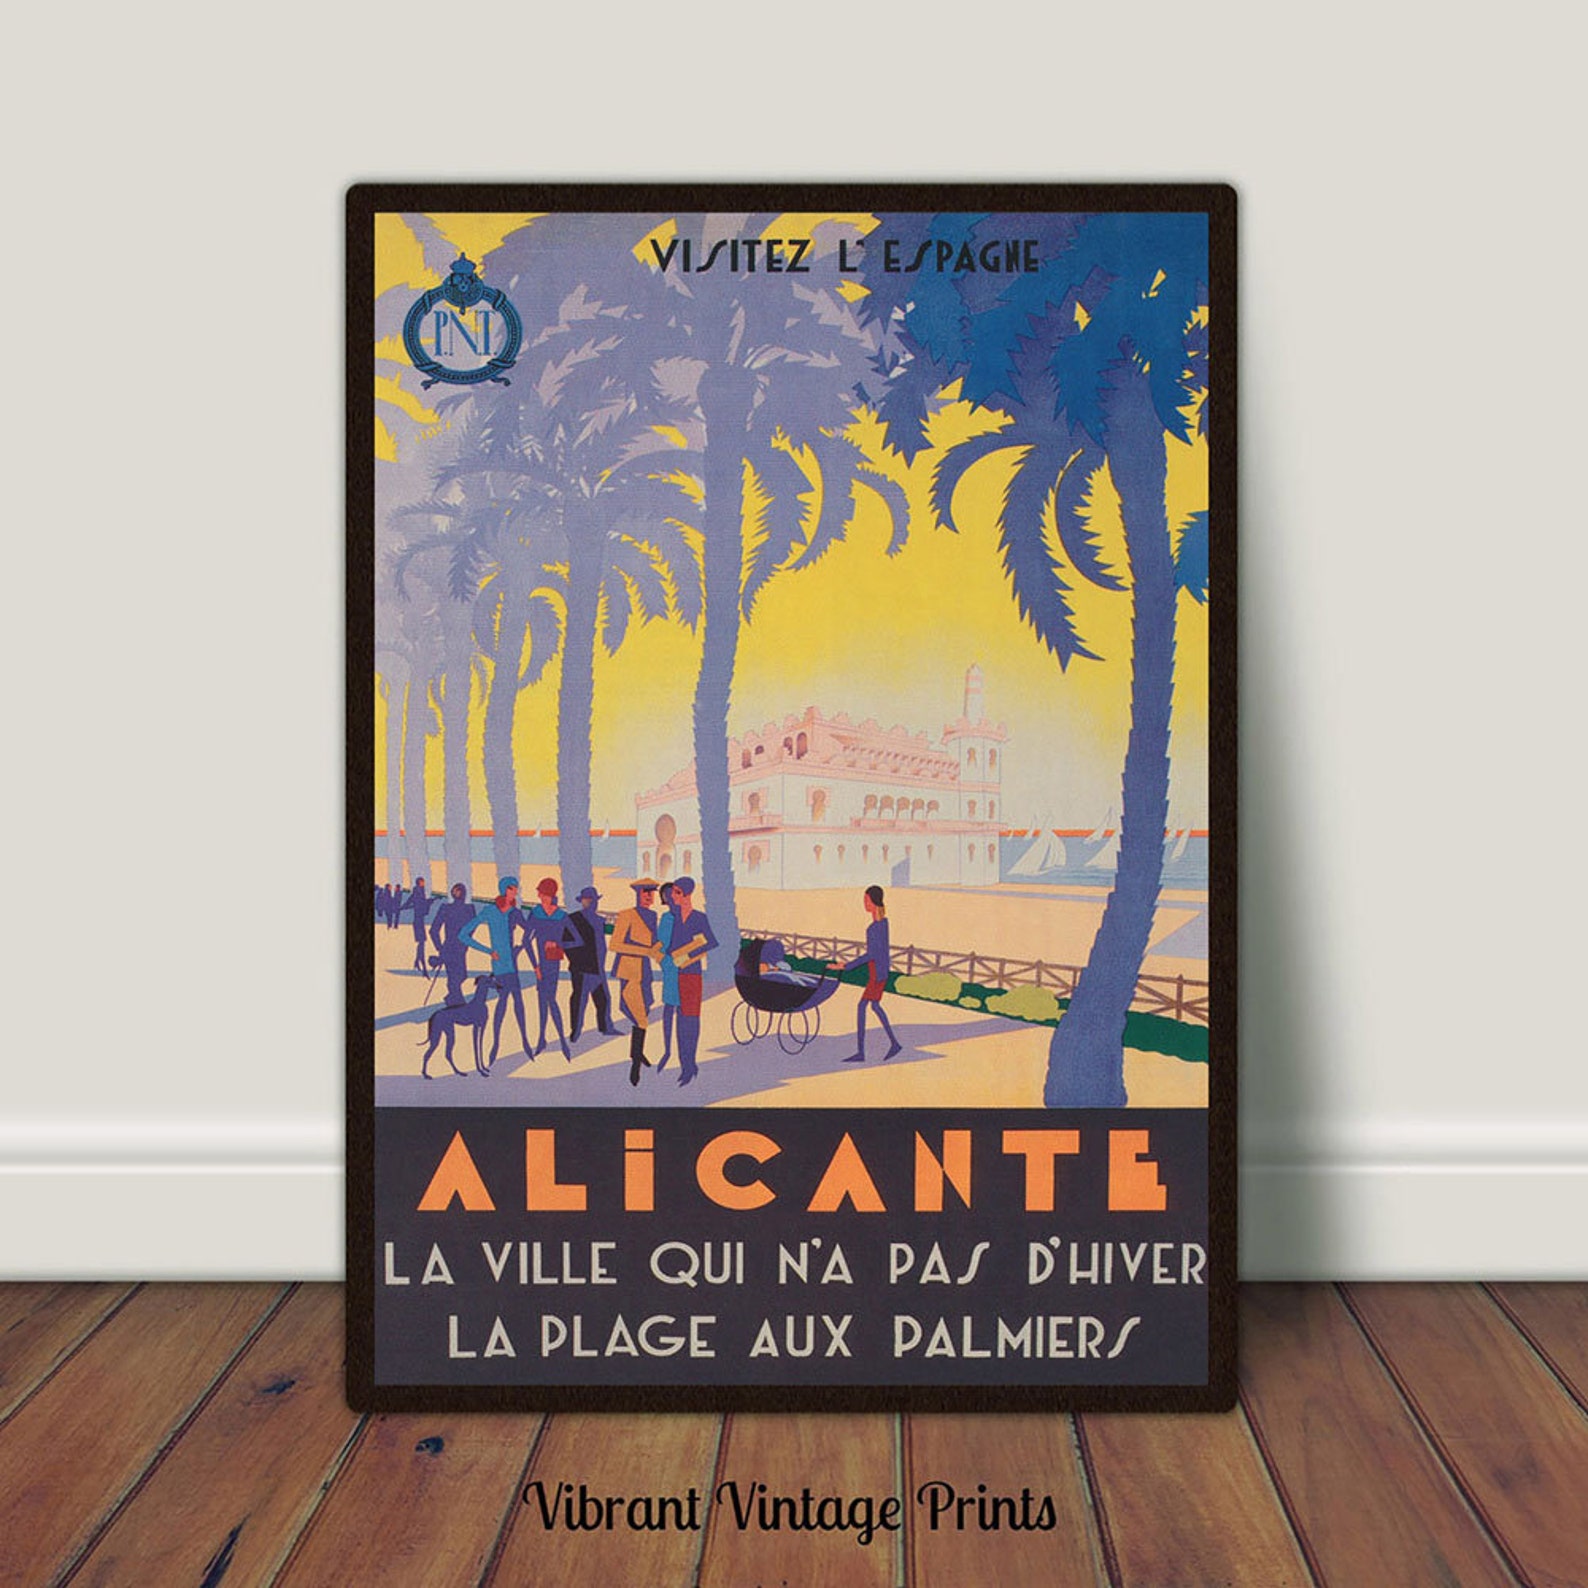 alicante travel book